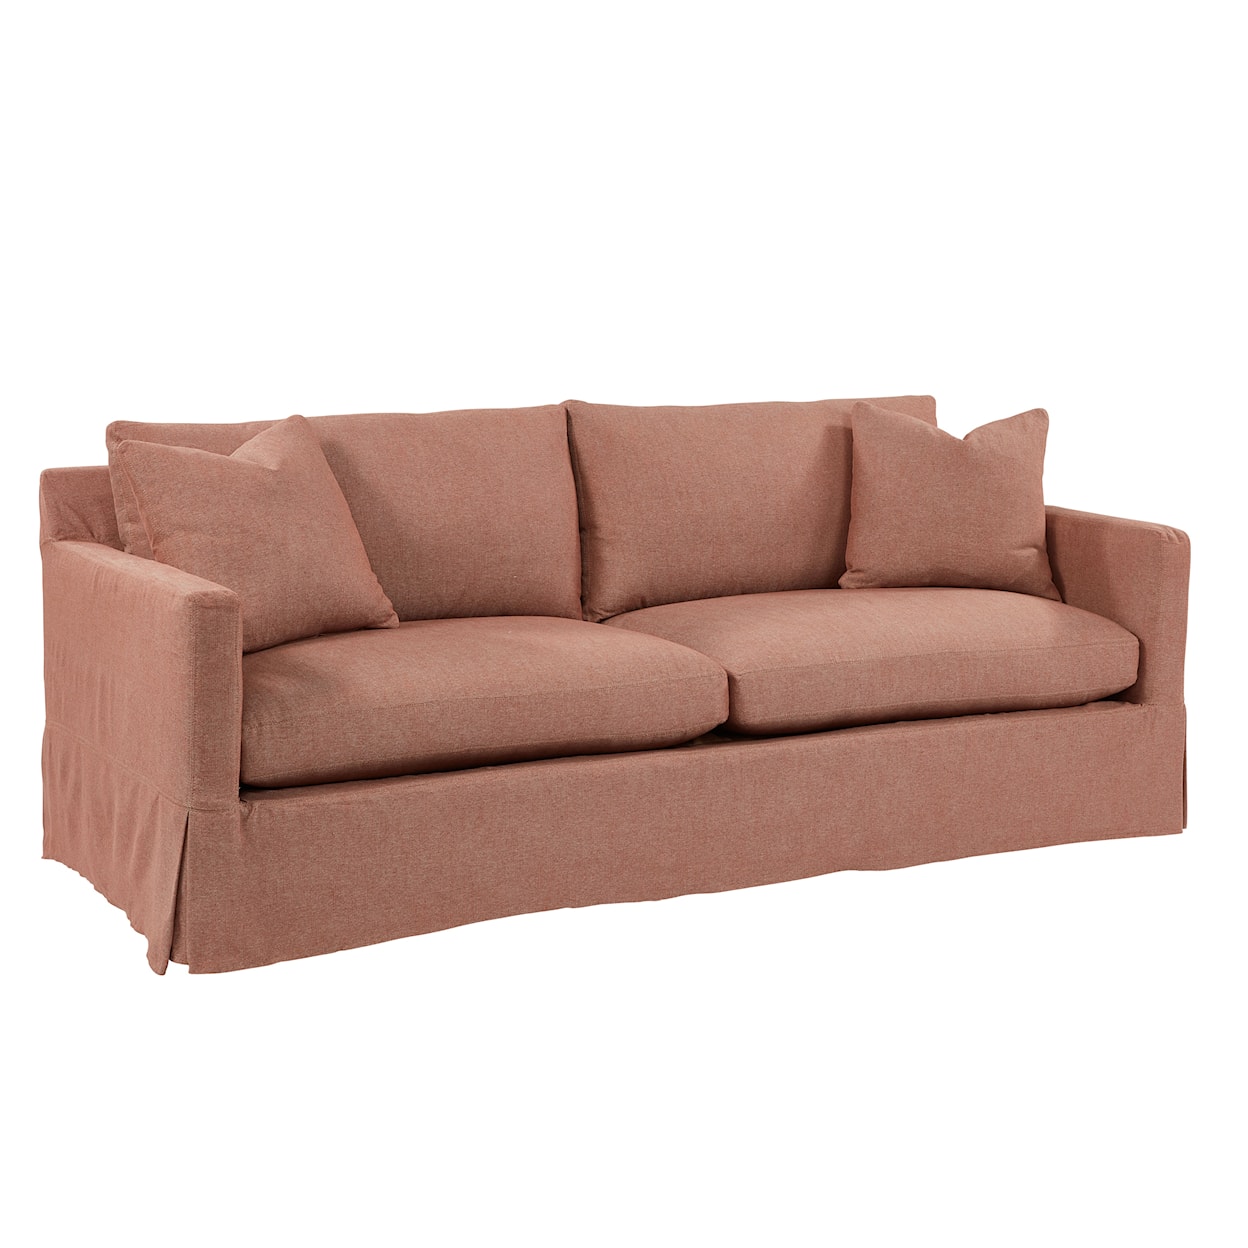 Universal Special Order Mebane Slipcover Sofa